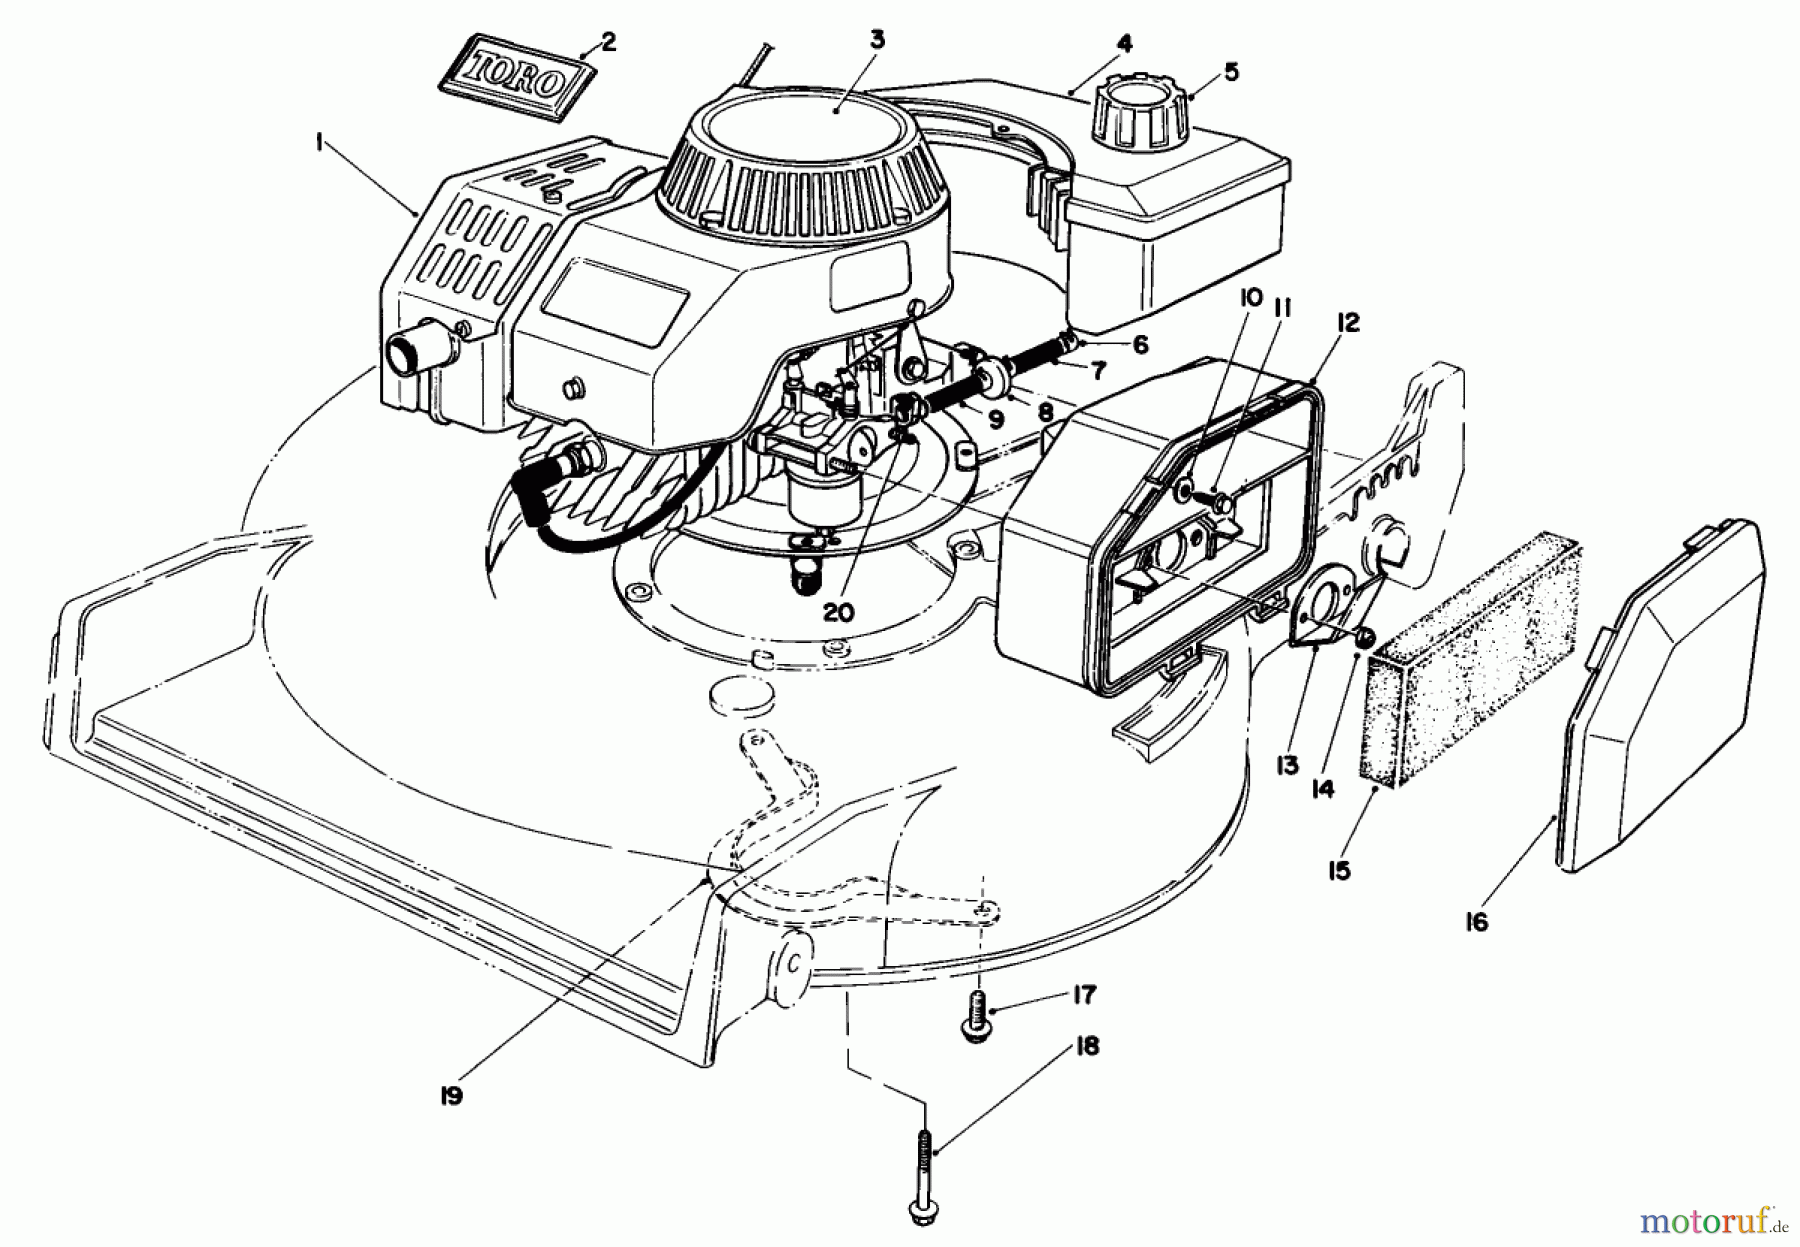  Toro Neu Mowers, Walk-Behind Seite 1 20684 - Toro Lawnmower, 1987 (7000001-7999999) ENGINE ASSEMBLY